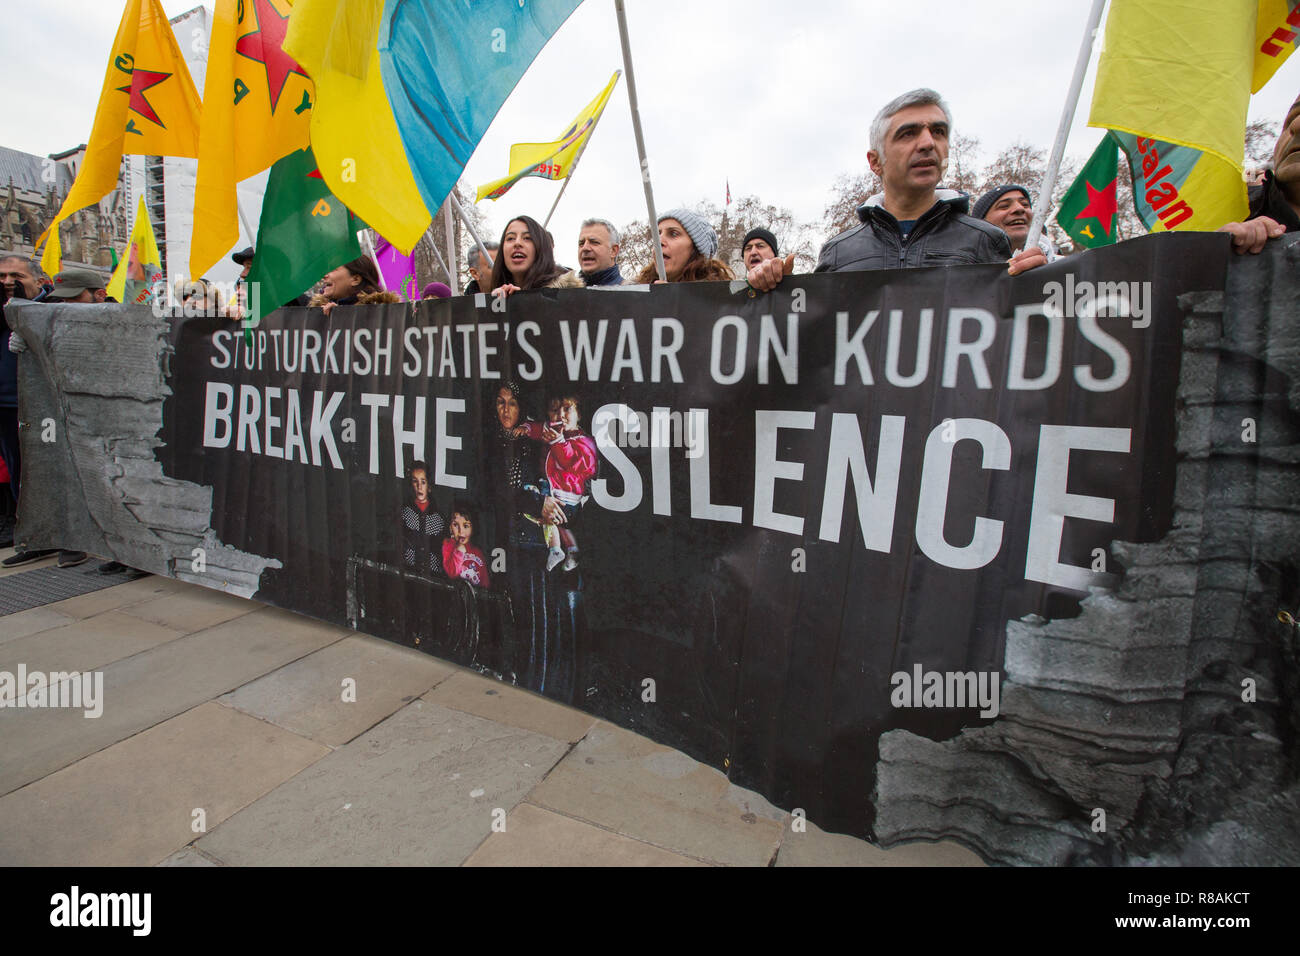 Londres, Royaume-Uni. 14 décembre 2018. Manifestants devant le Parlement kurde montrer leur solidarité avec ceux qui sont en grève de la faim comme Leyla Guven crédit : George Cracknell Wright/Alamy Live News Banque D'Images